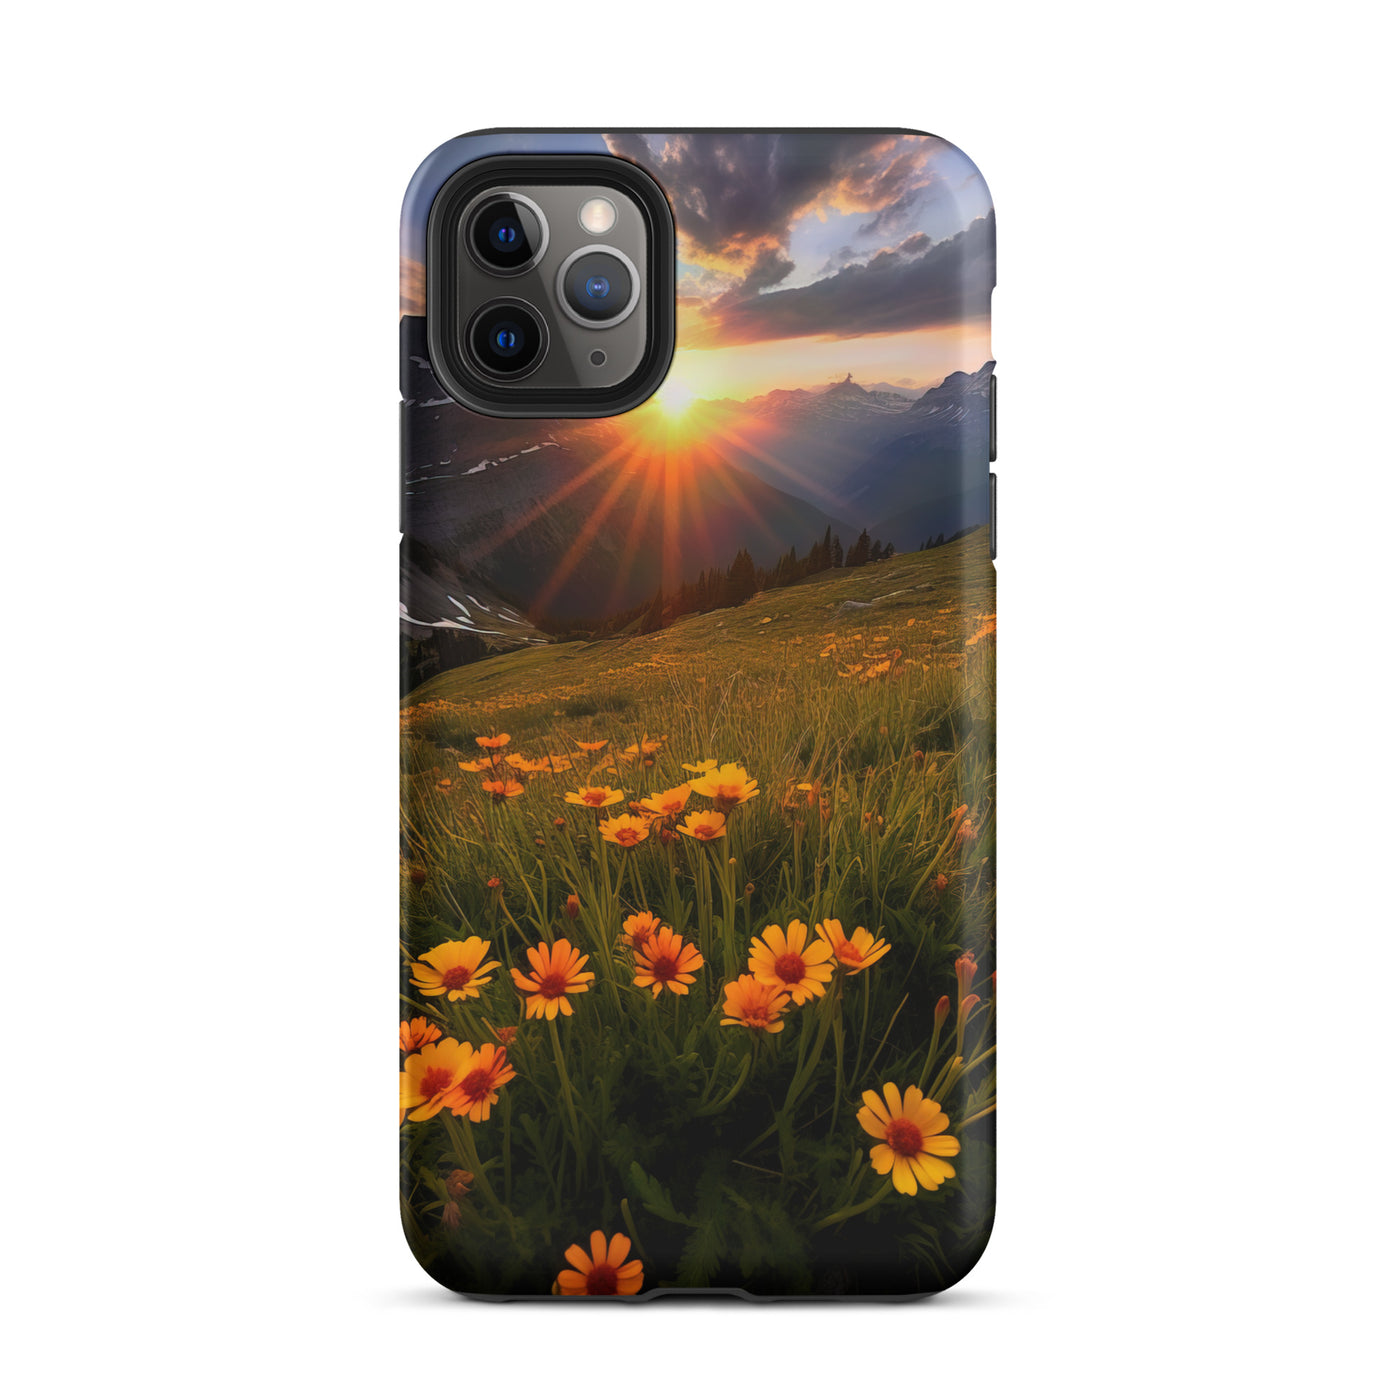 Gebirge, Sonnenblumen und Sonnenaufgang - iPhone Schutzhülle (robust) berge xxx iPhone 11 Pro Max